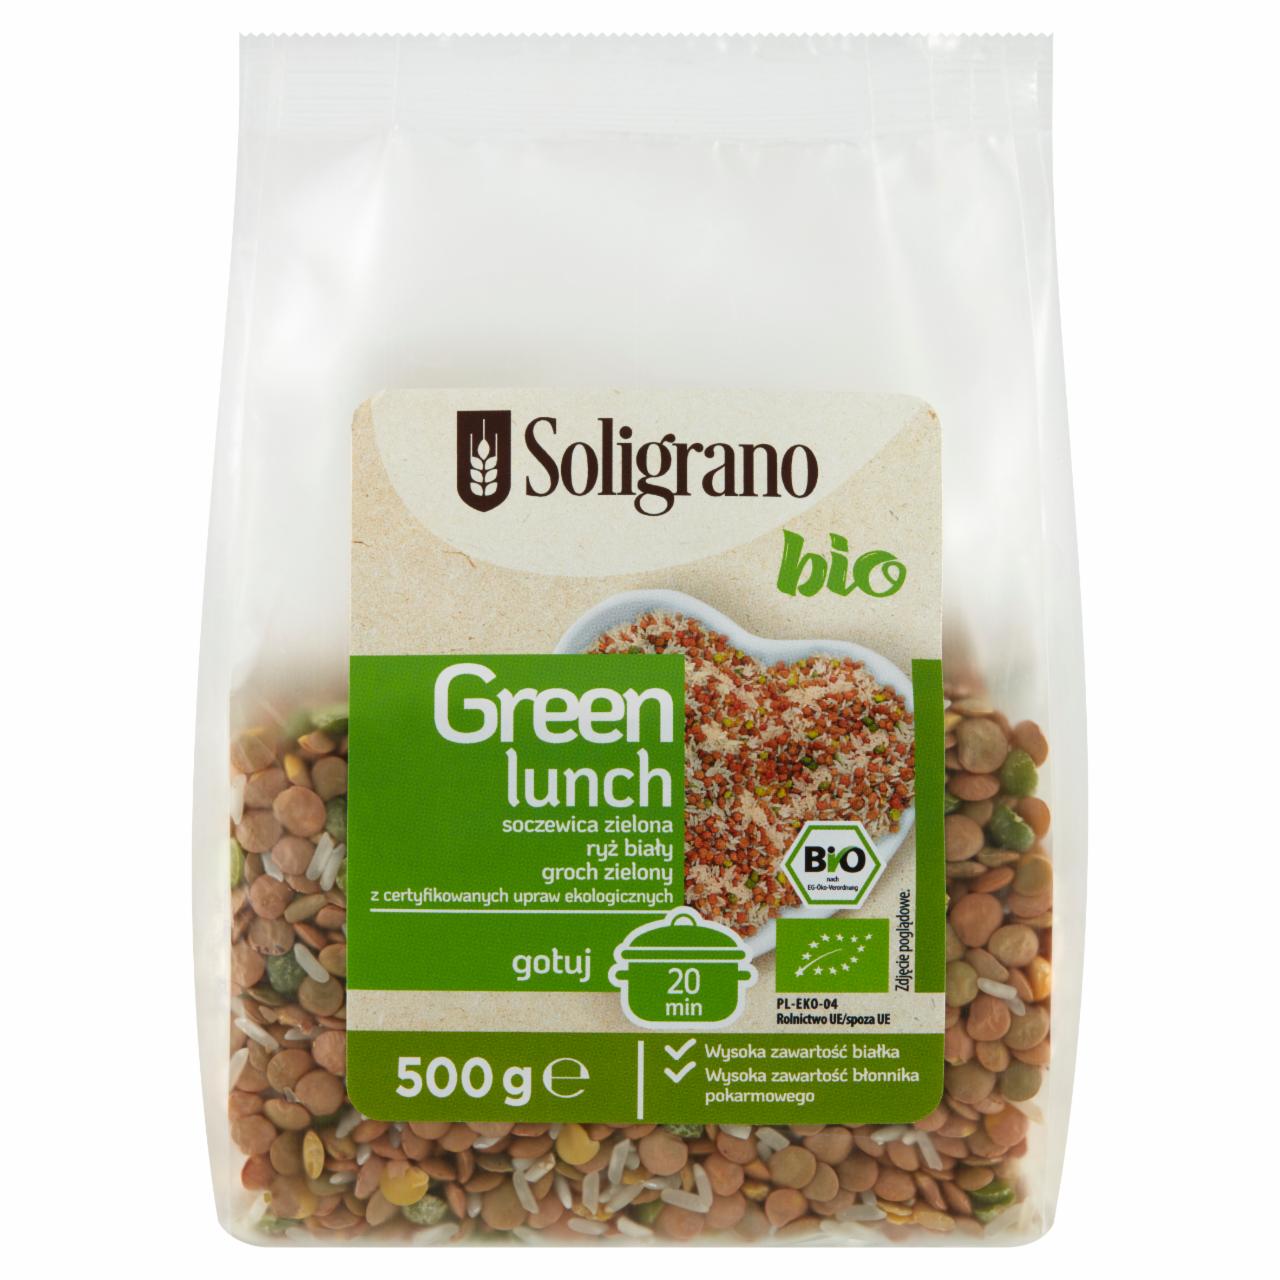 Zdjęcia - Soligrano Bio Green Lunch Soczewica zielona ryż biały groch zielony 500 g